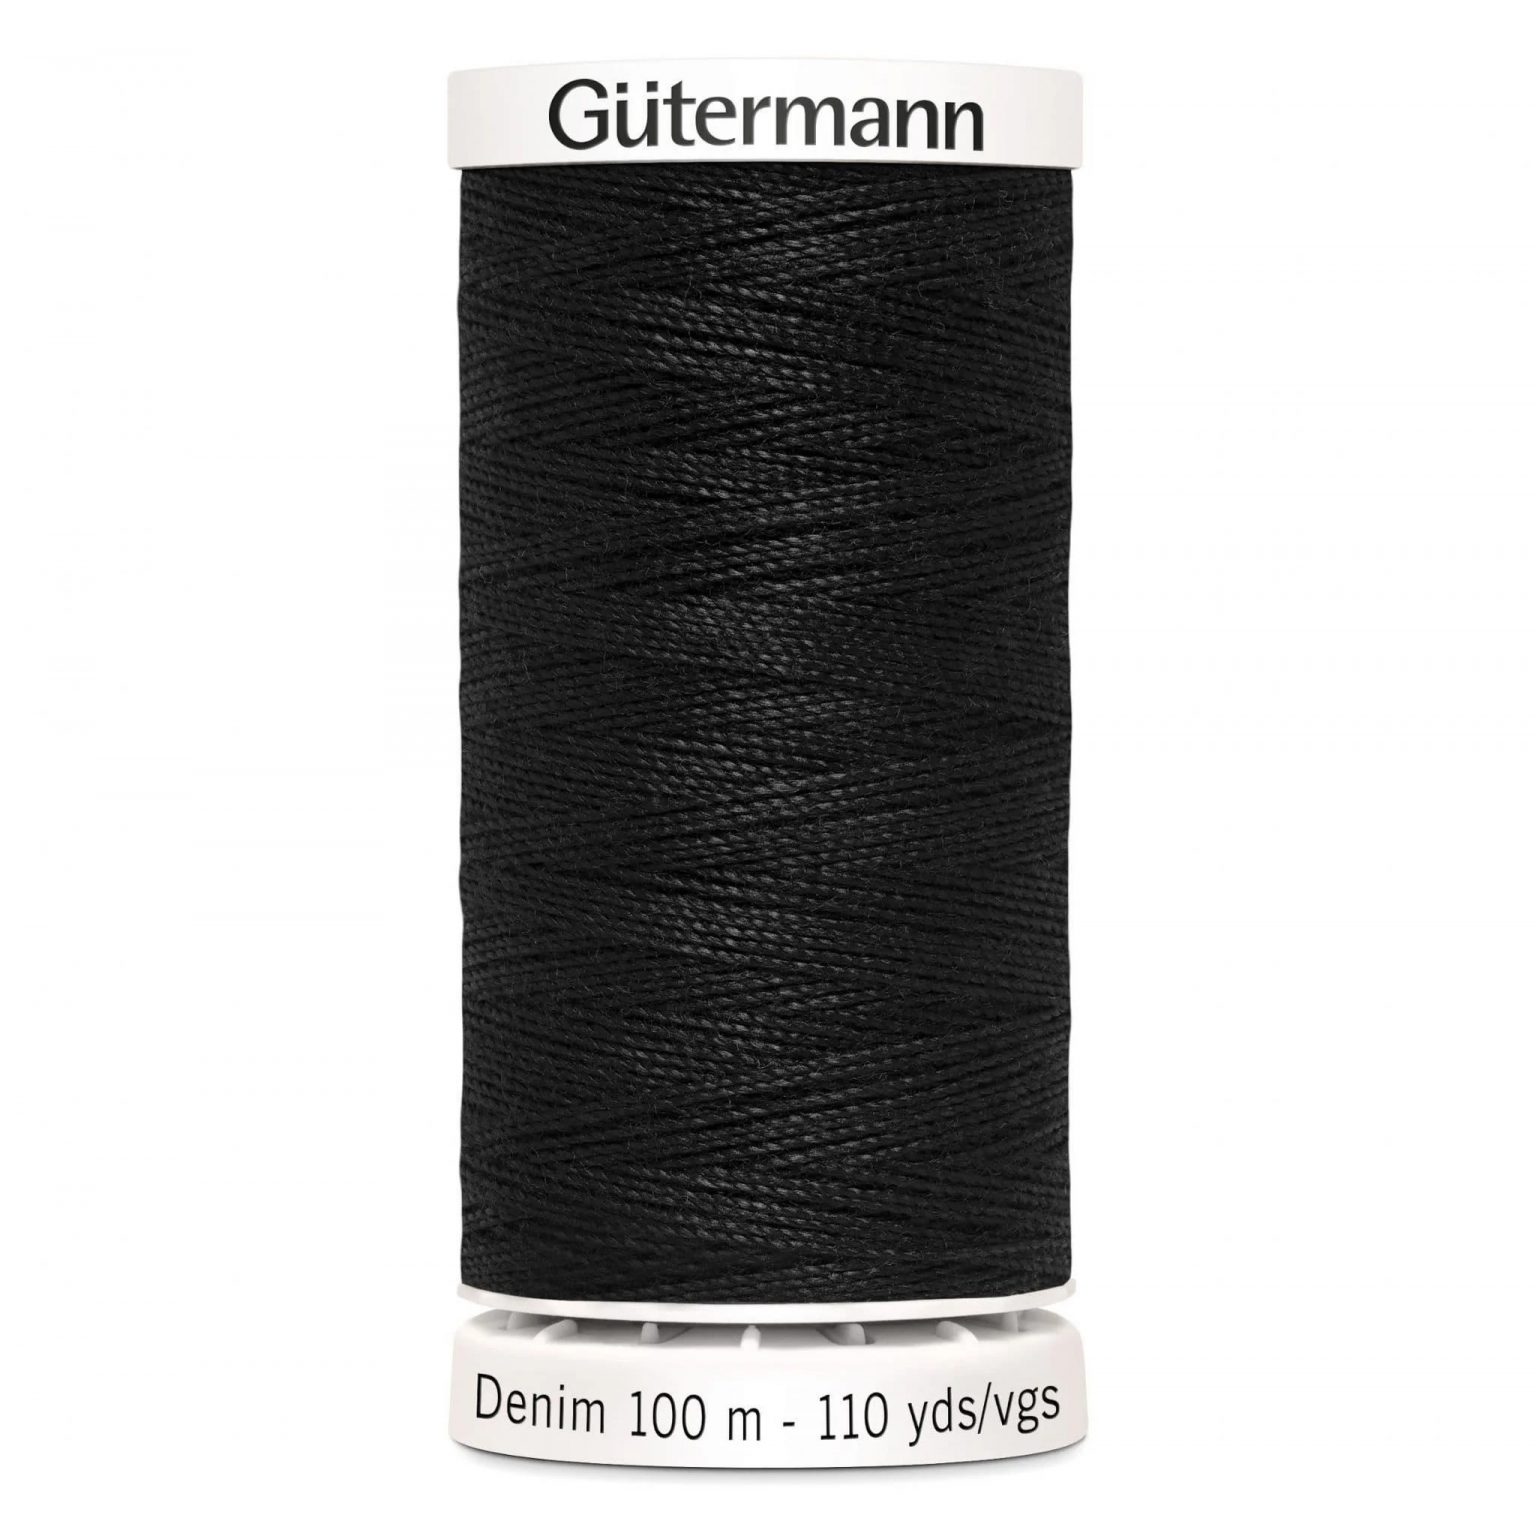 Gutermann Denim Sewing Thread in Black 1000